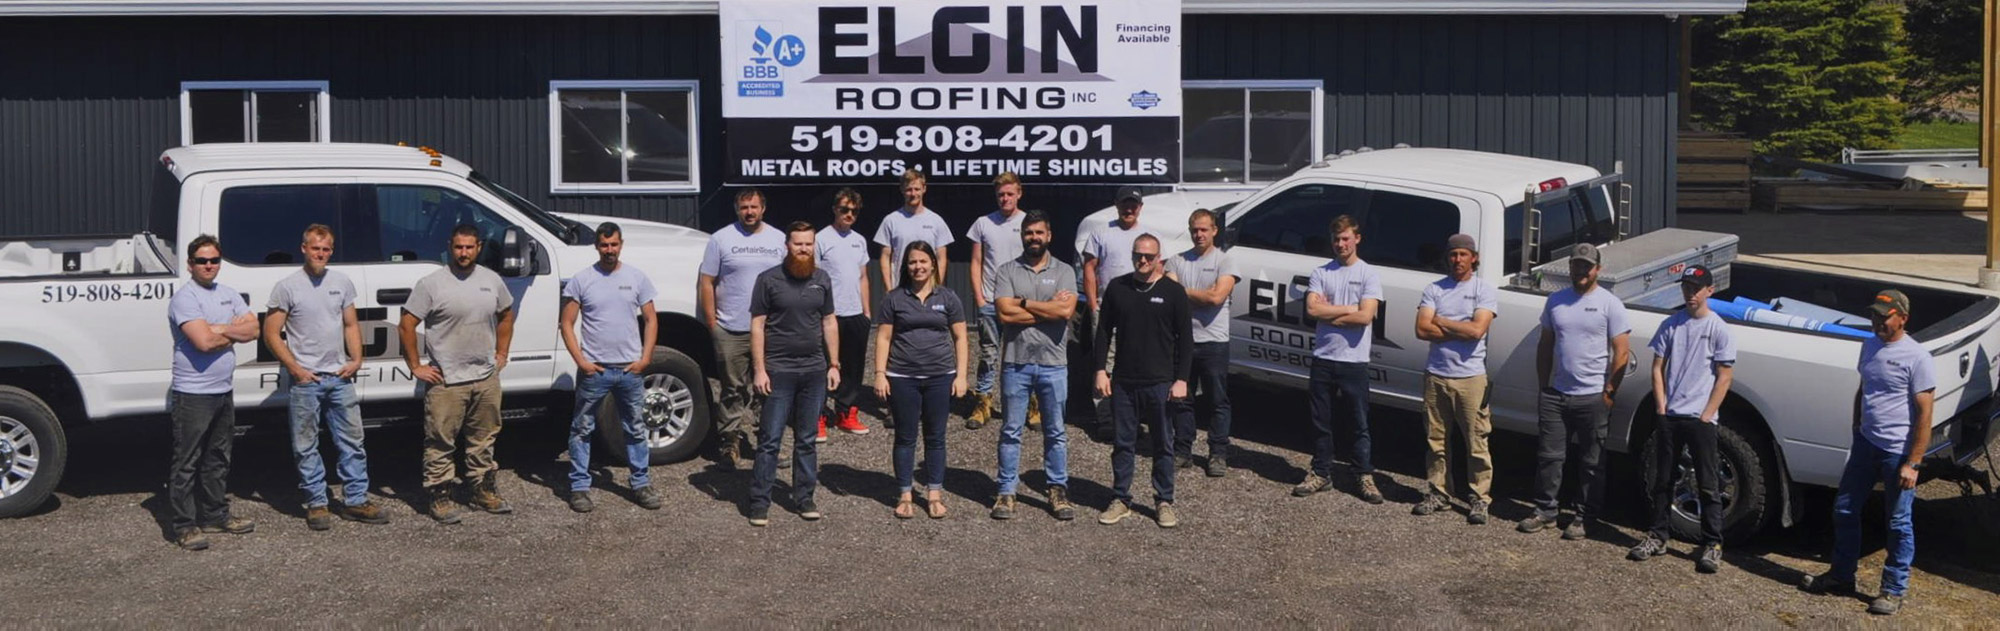 Elgin Roofing team